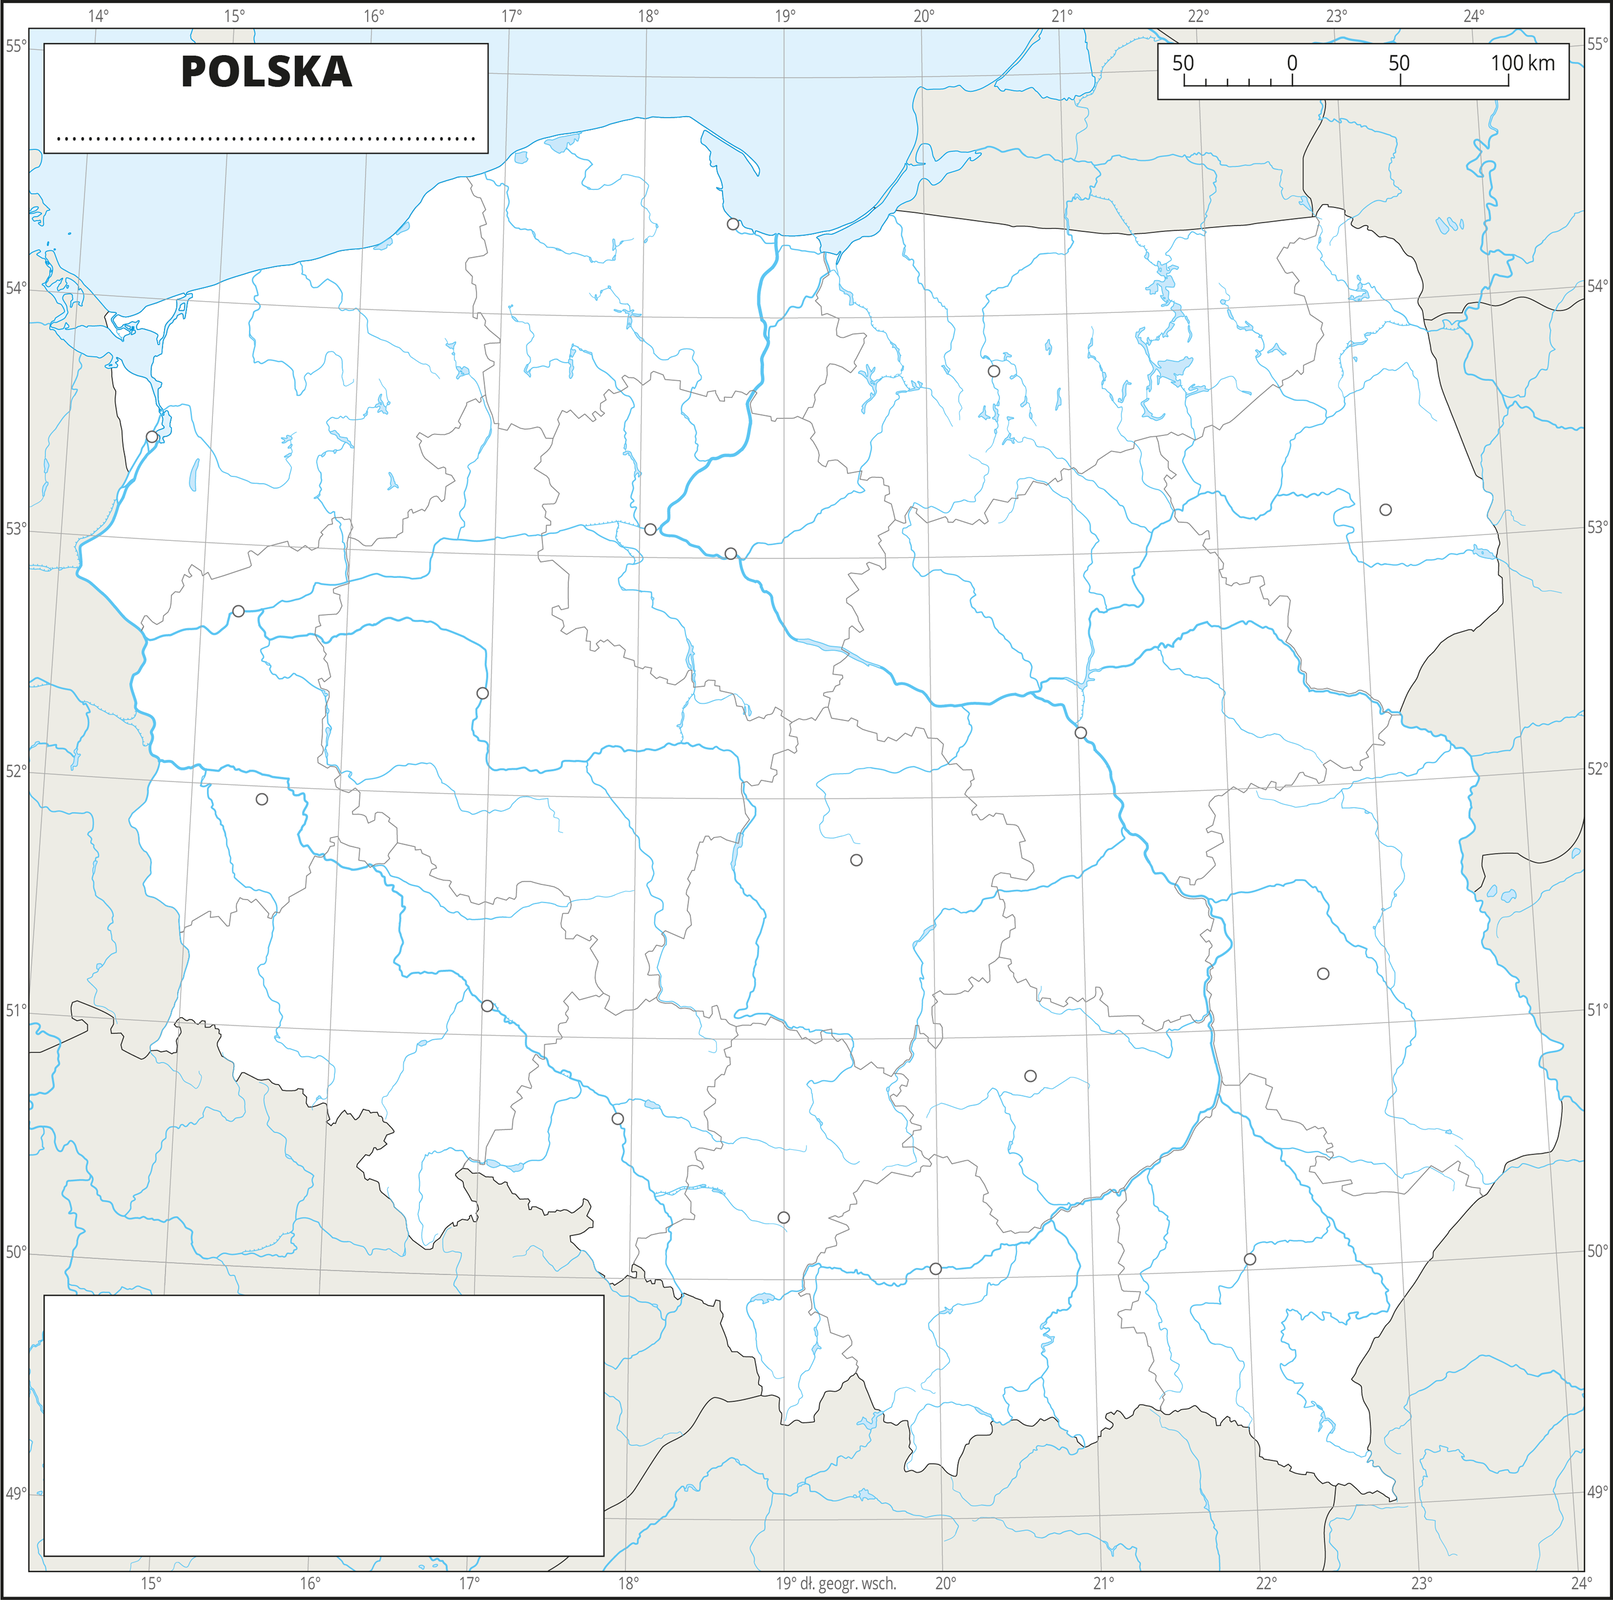 Ilustracja przedstawia konturową mapę Polski z podziałem na województwa. Na mapie przedstawiono hydrografię, granice województw, sygnatury miast wojewódzkich.Dookoła mapy w białej ramce opisano współrzędne geograficzne co jeden stopień. W prawym, górnym rogu znajduje się podziałka liniowa.